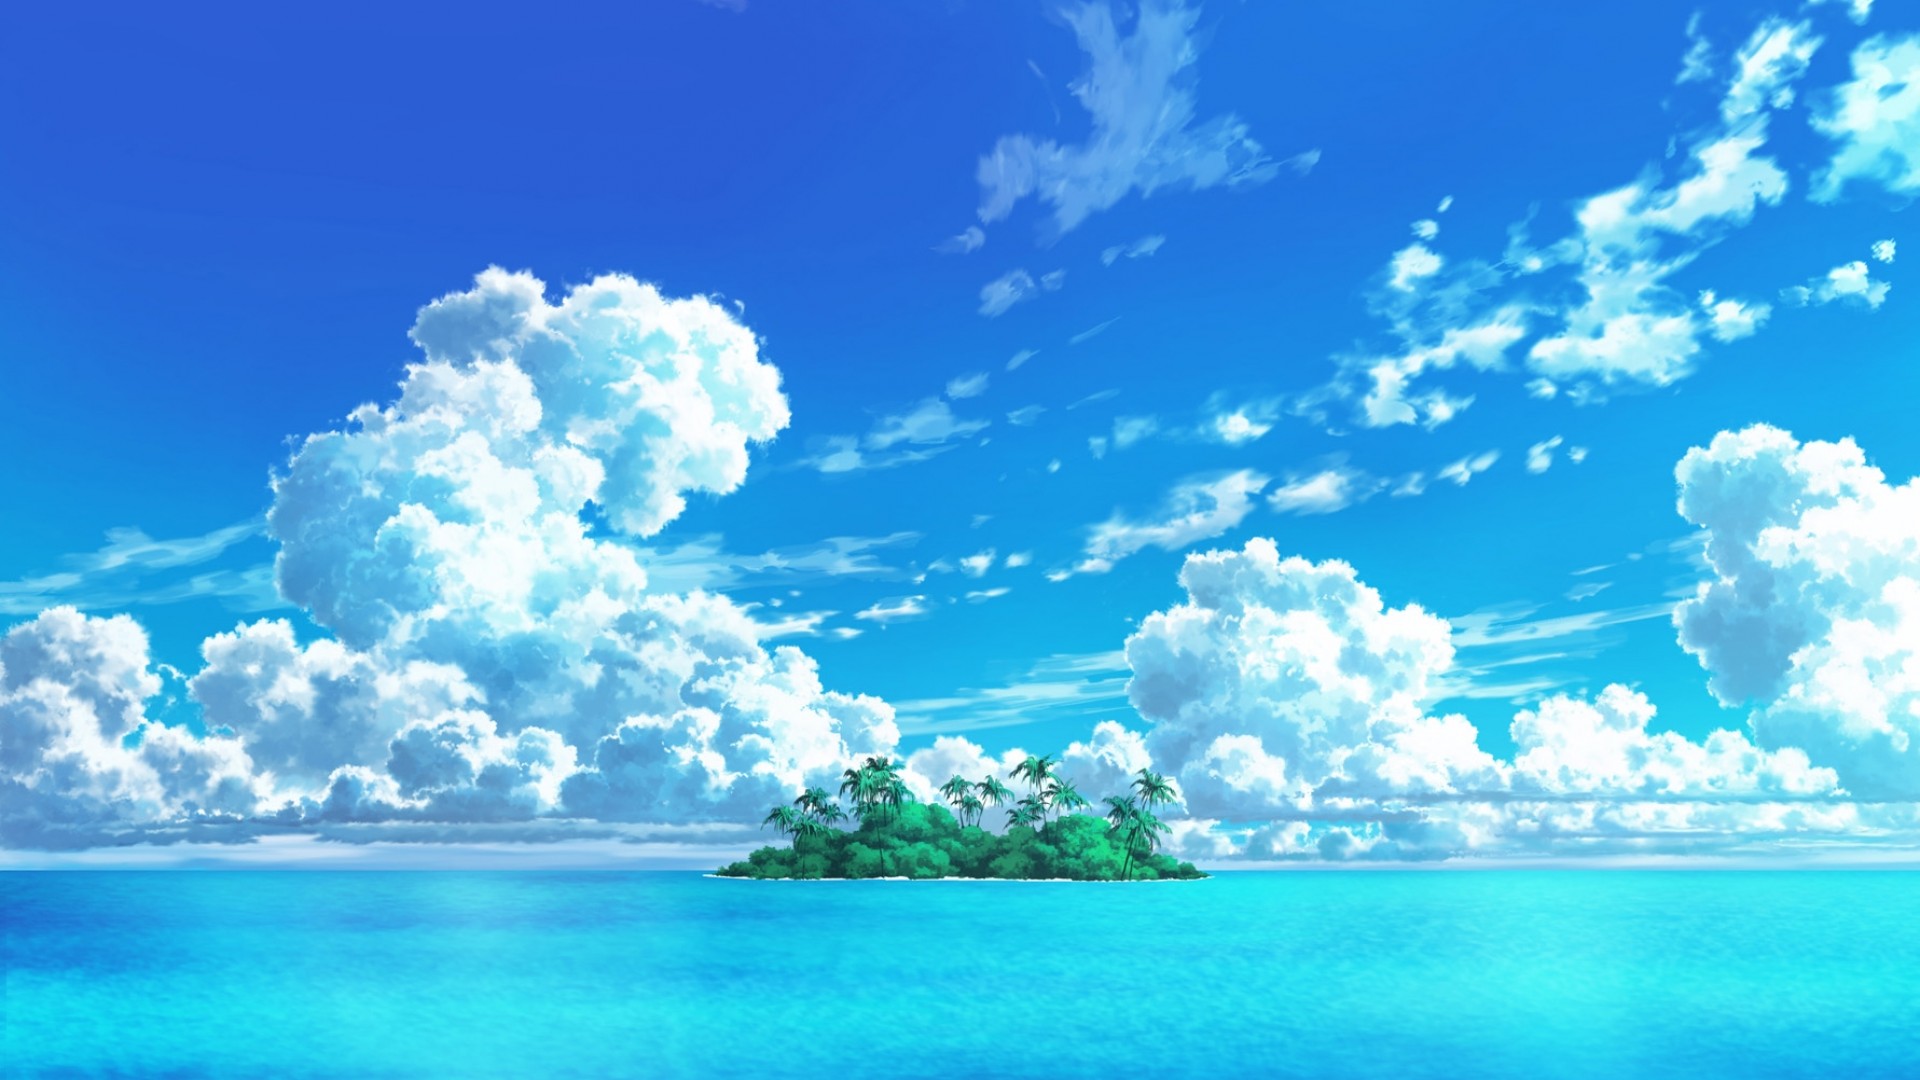 anime paradise on Nintendo Switch – Japanese Yen